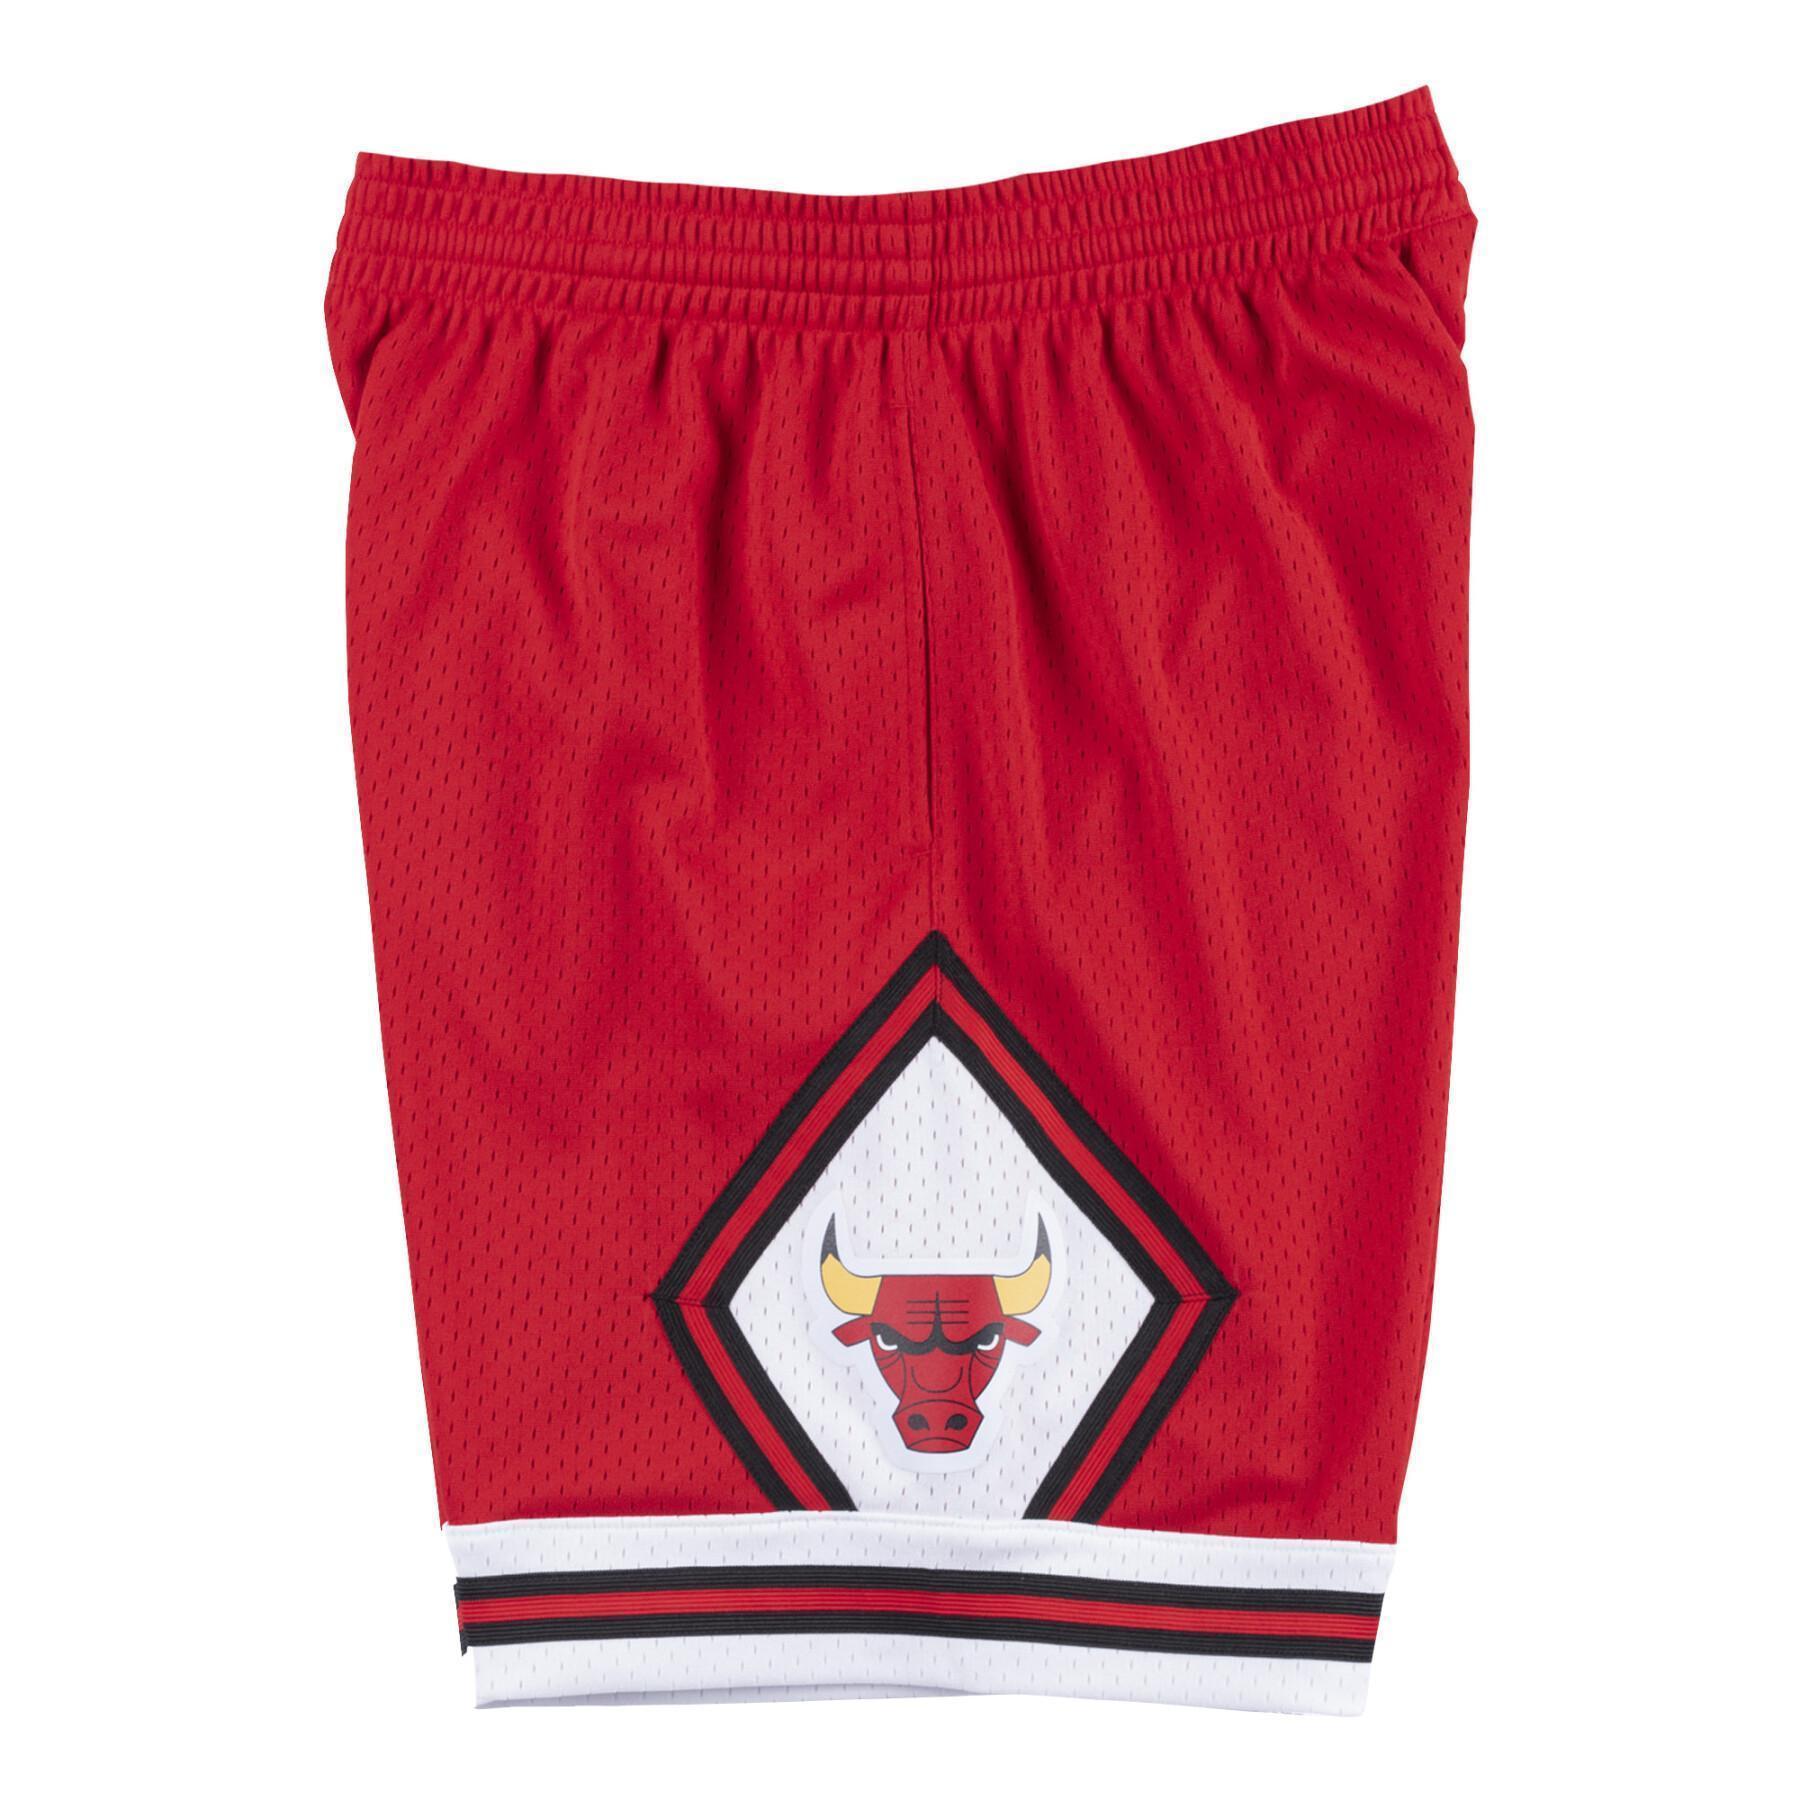 Swingman shorts Chicago Bulls